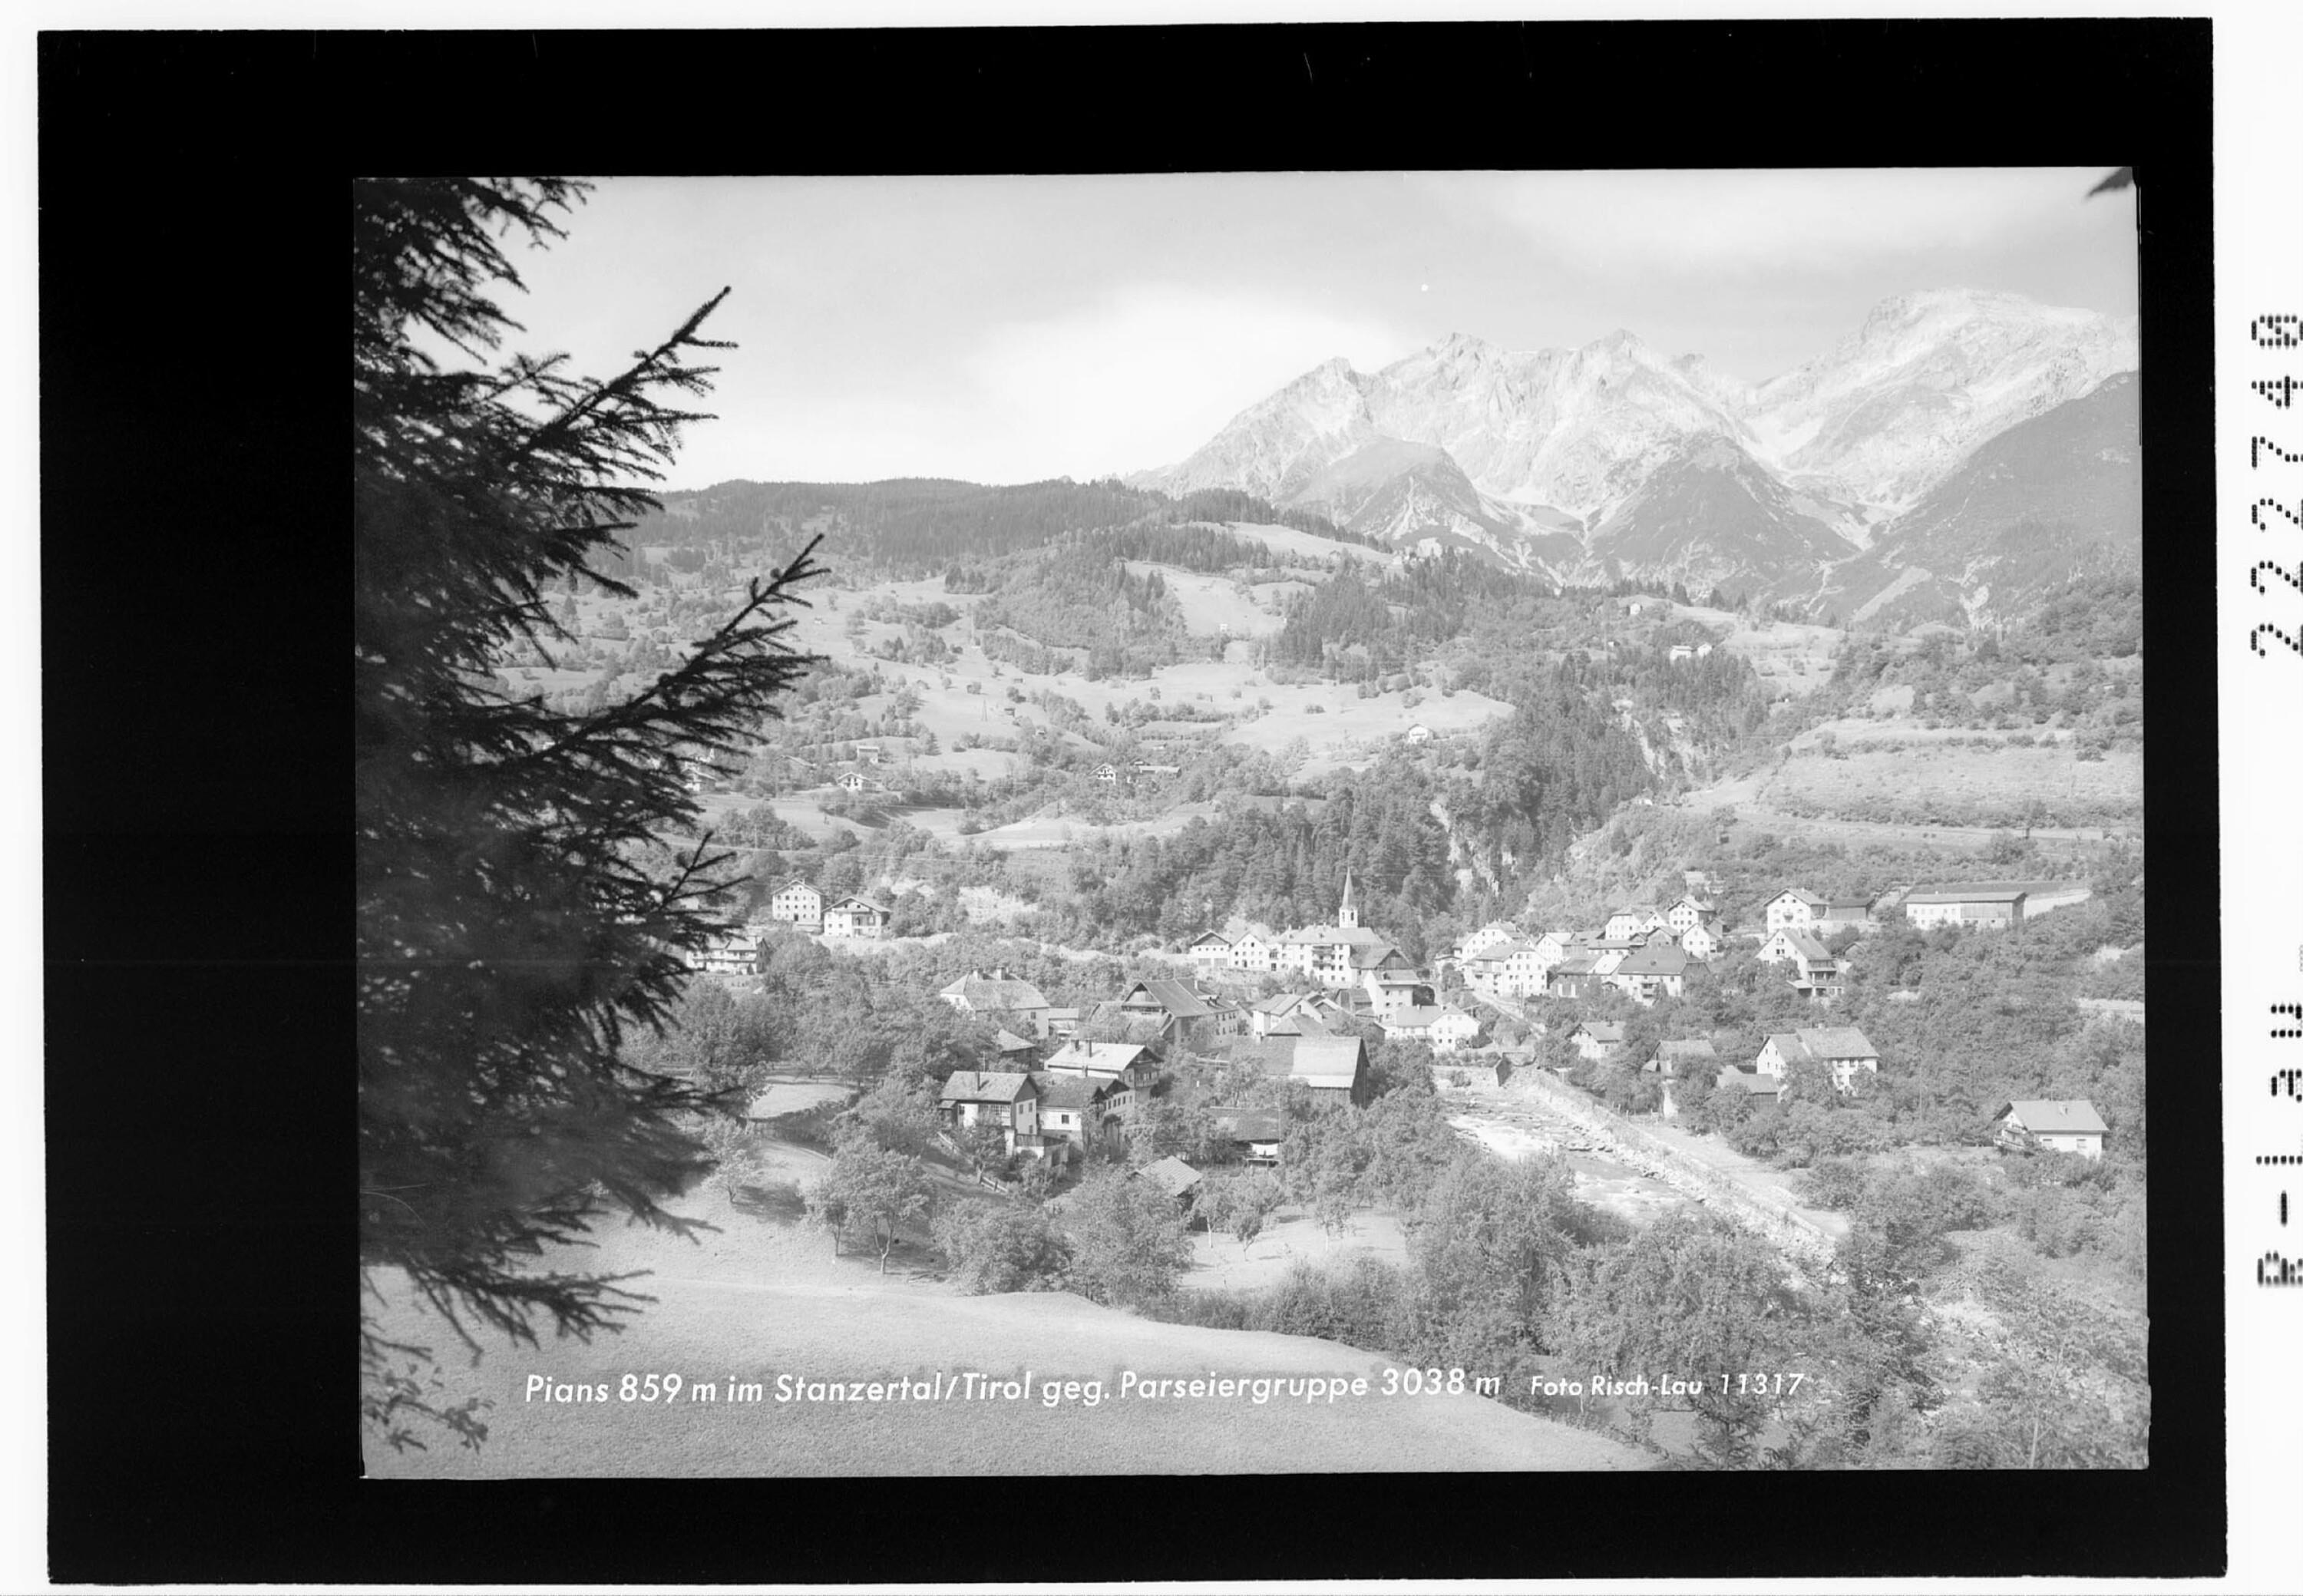 Pians 859 m im Stanzertal / Tirol gegen Parseiergruppe 3038 m></div>


    <hr>
    <div class=